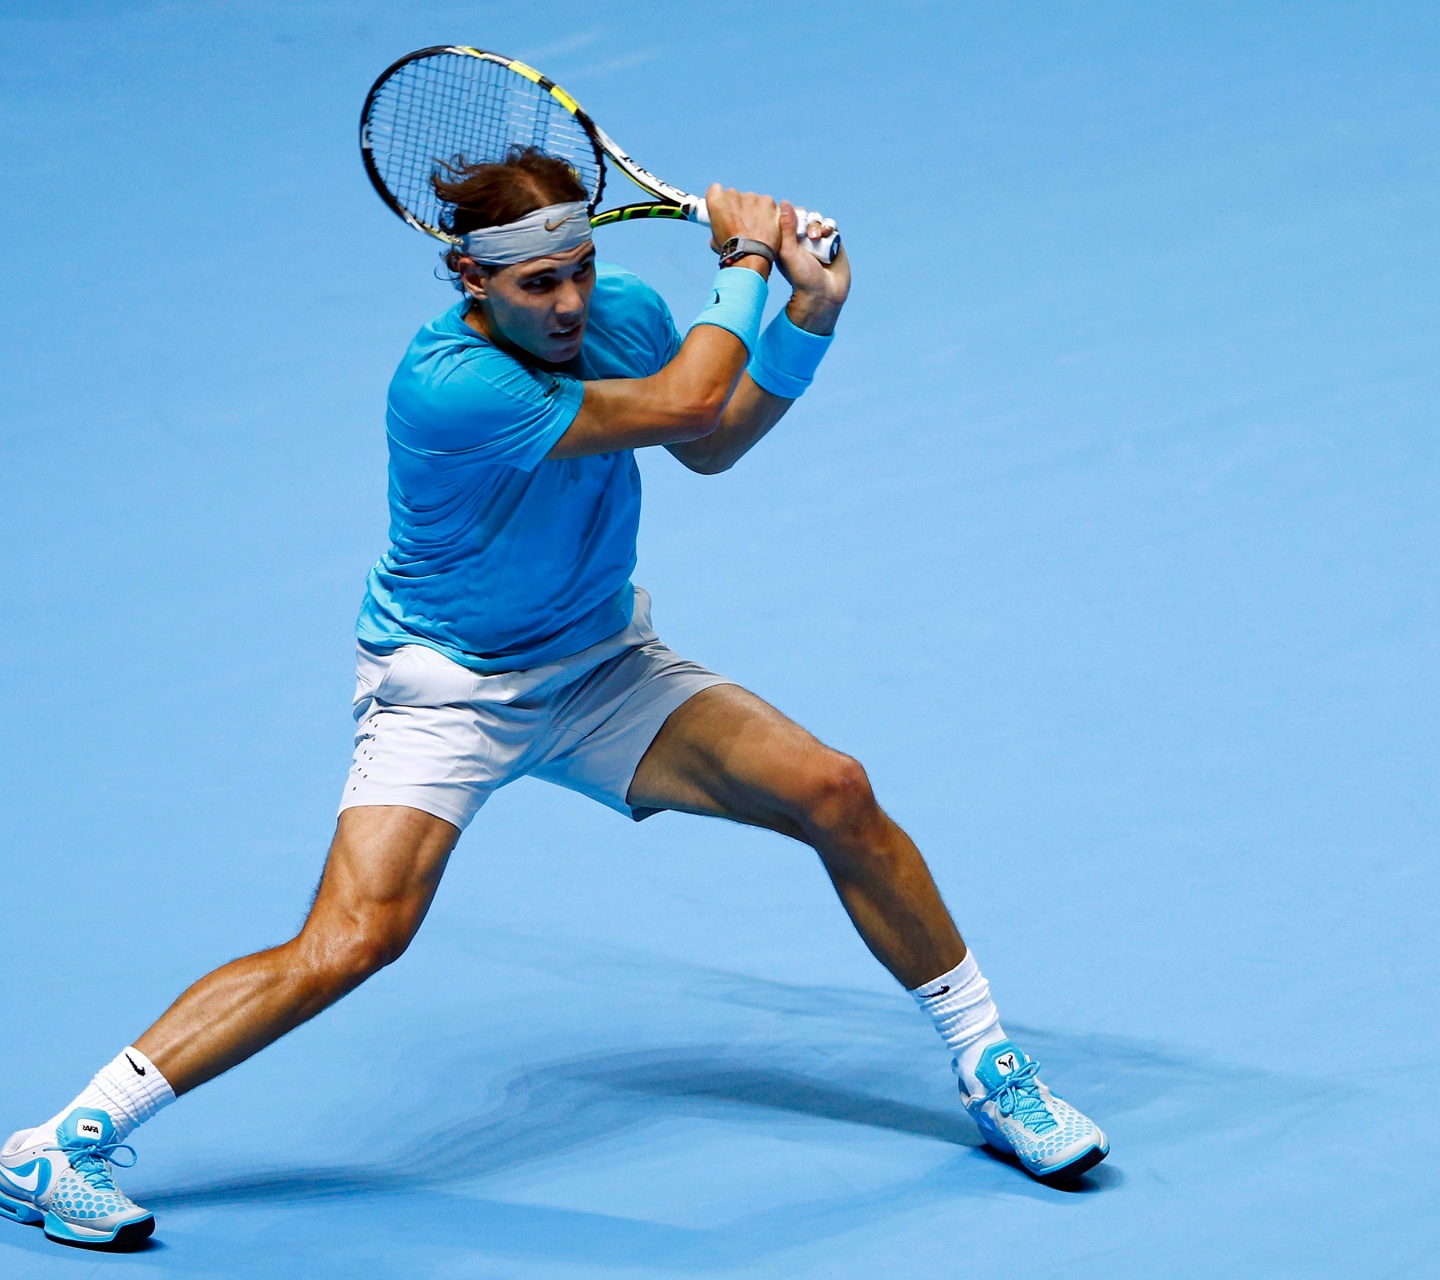 Nadal Plays Tennis